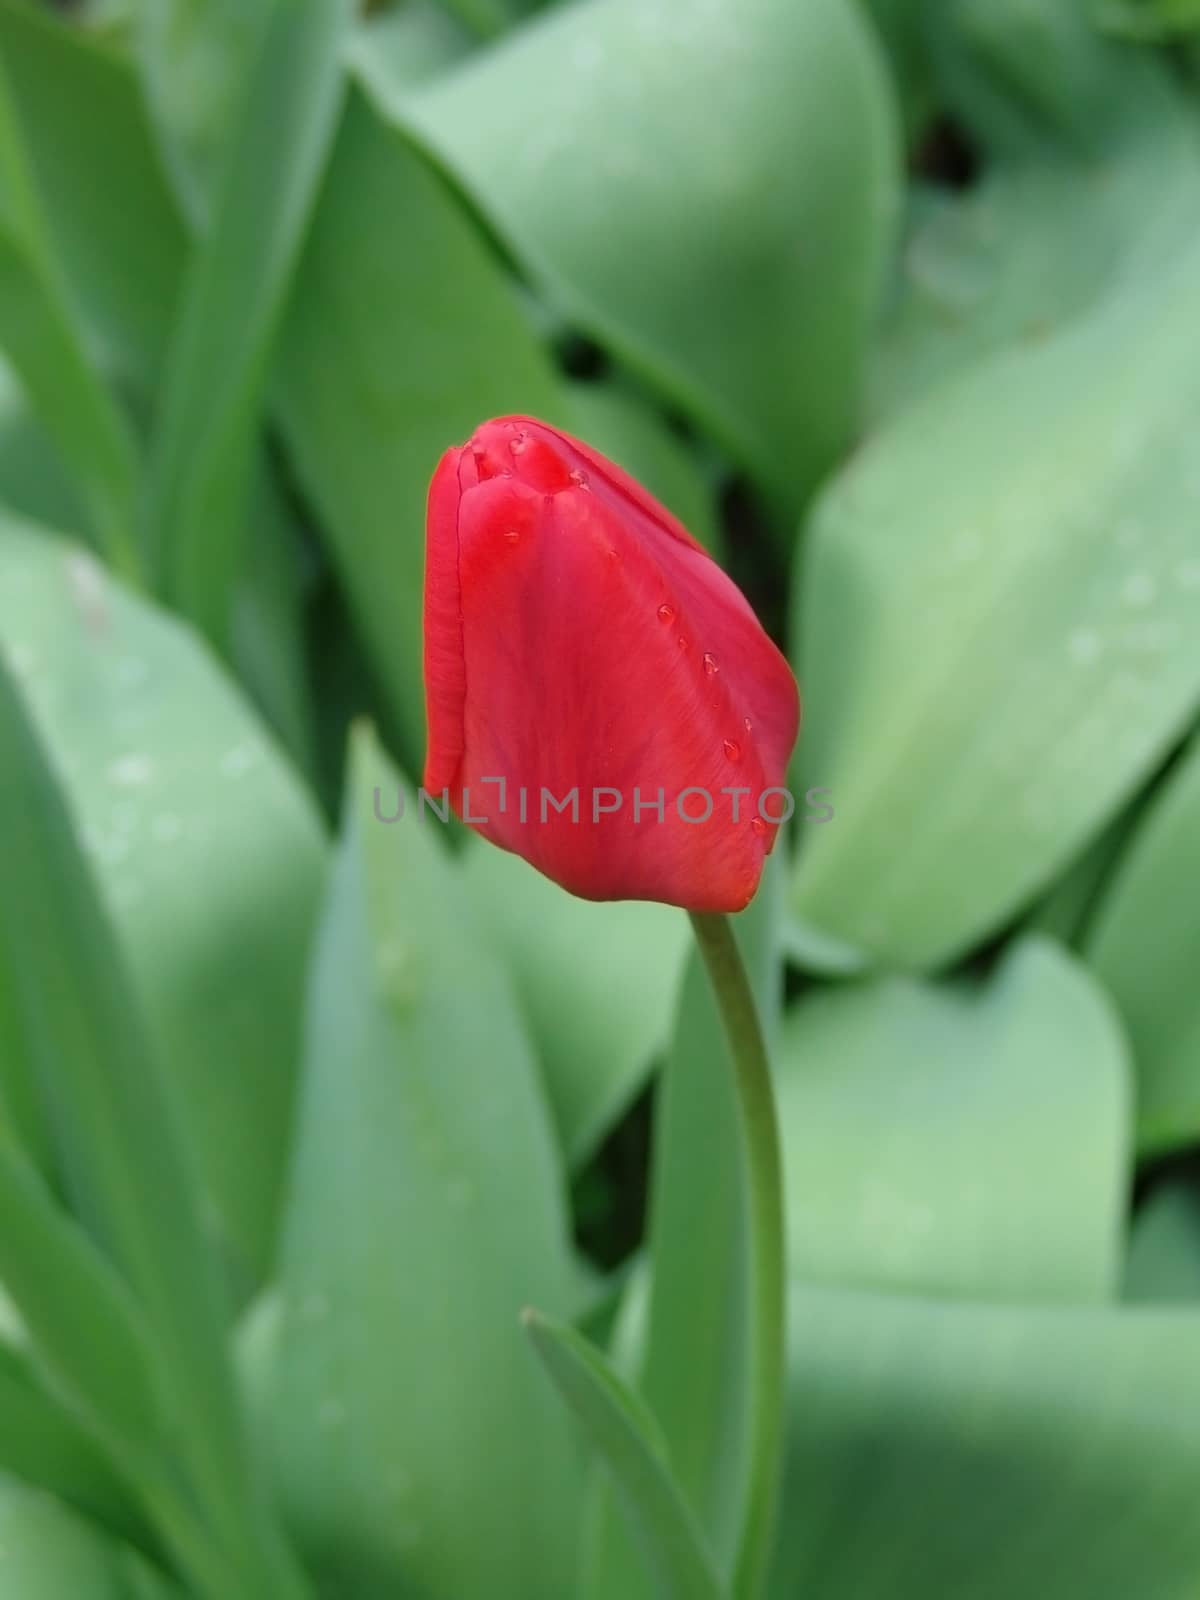 Tulips by elena_vz